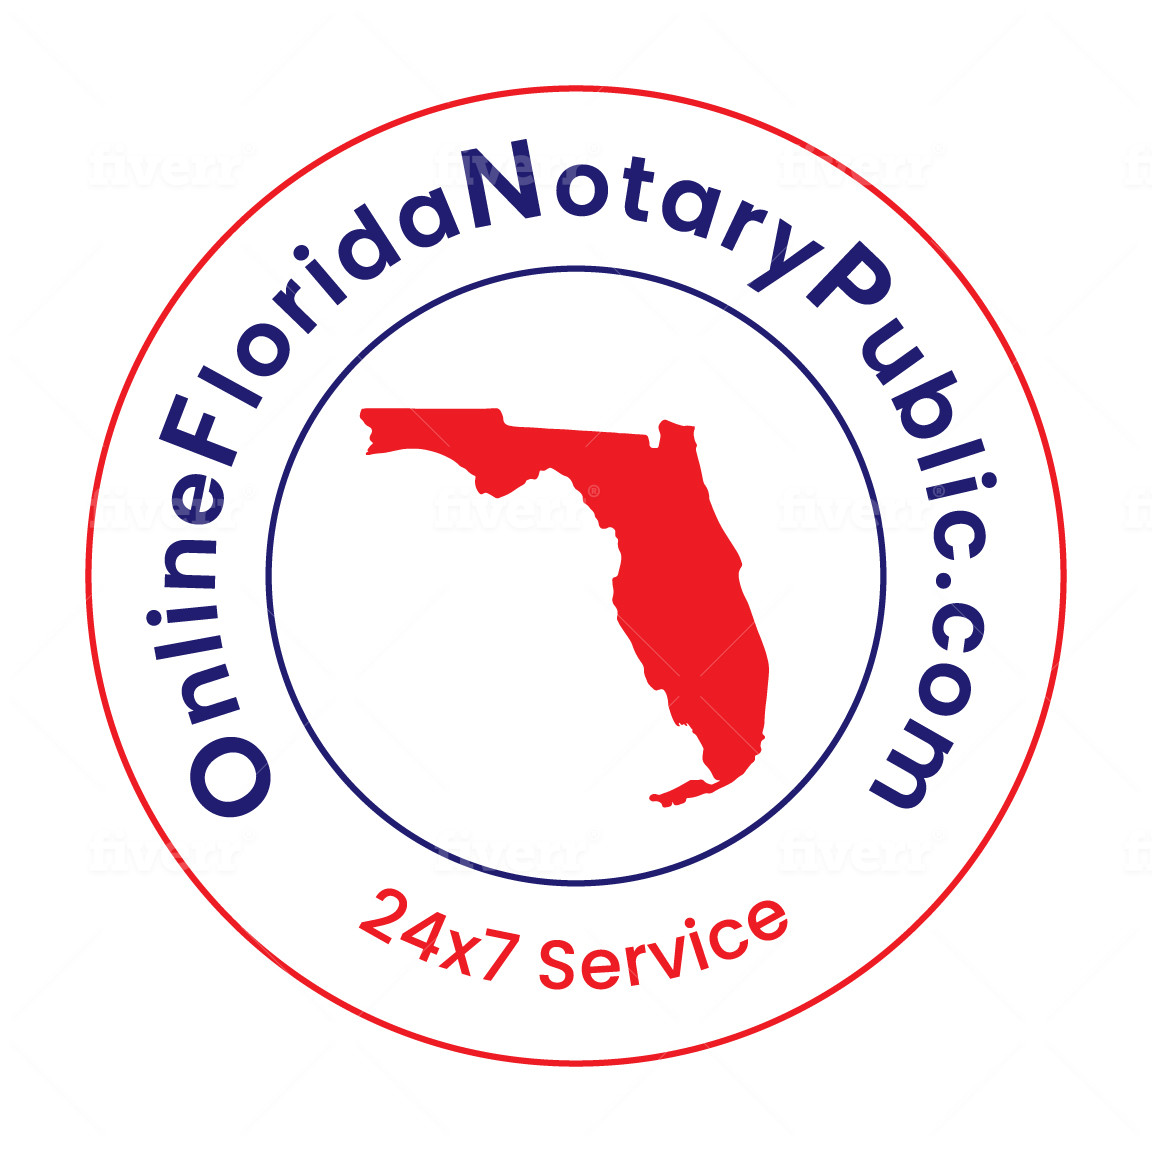 Online Florida Notary Public LLC logo